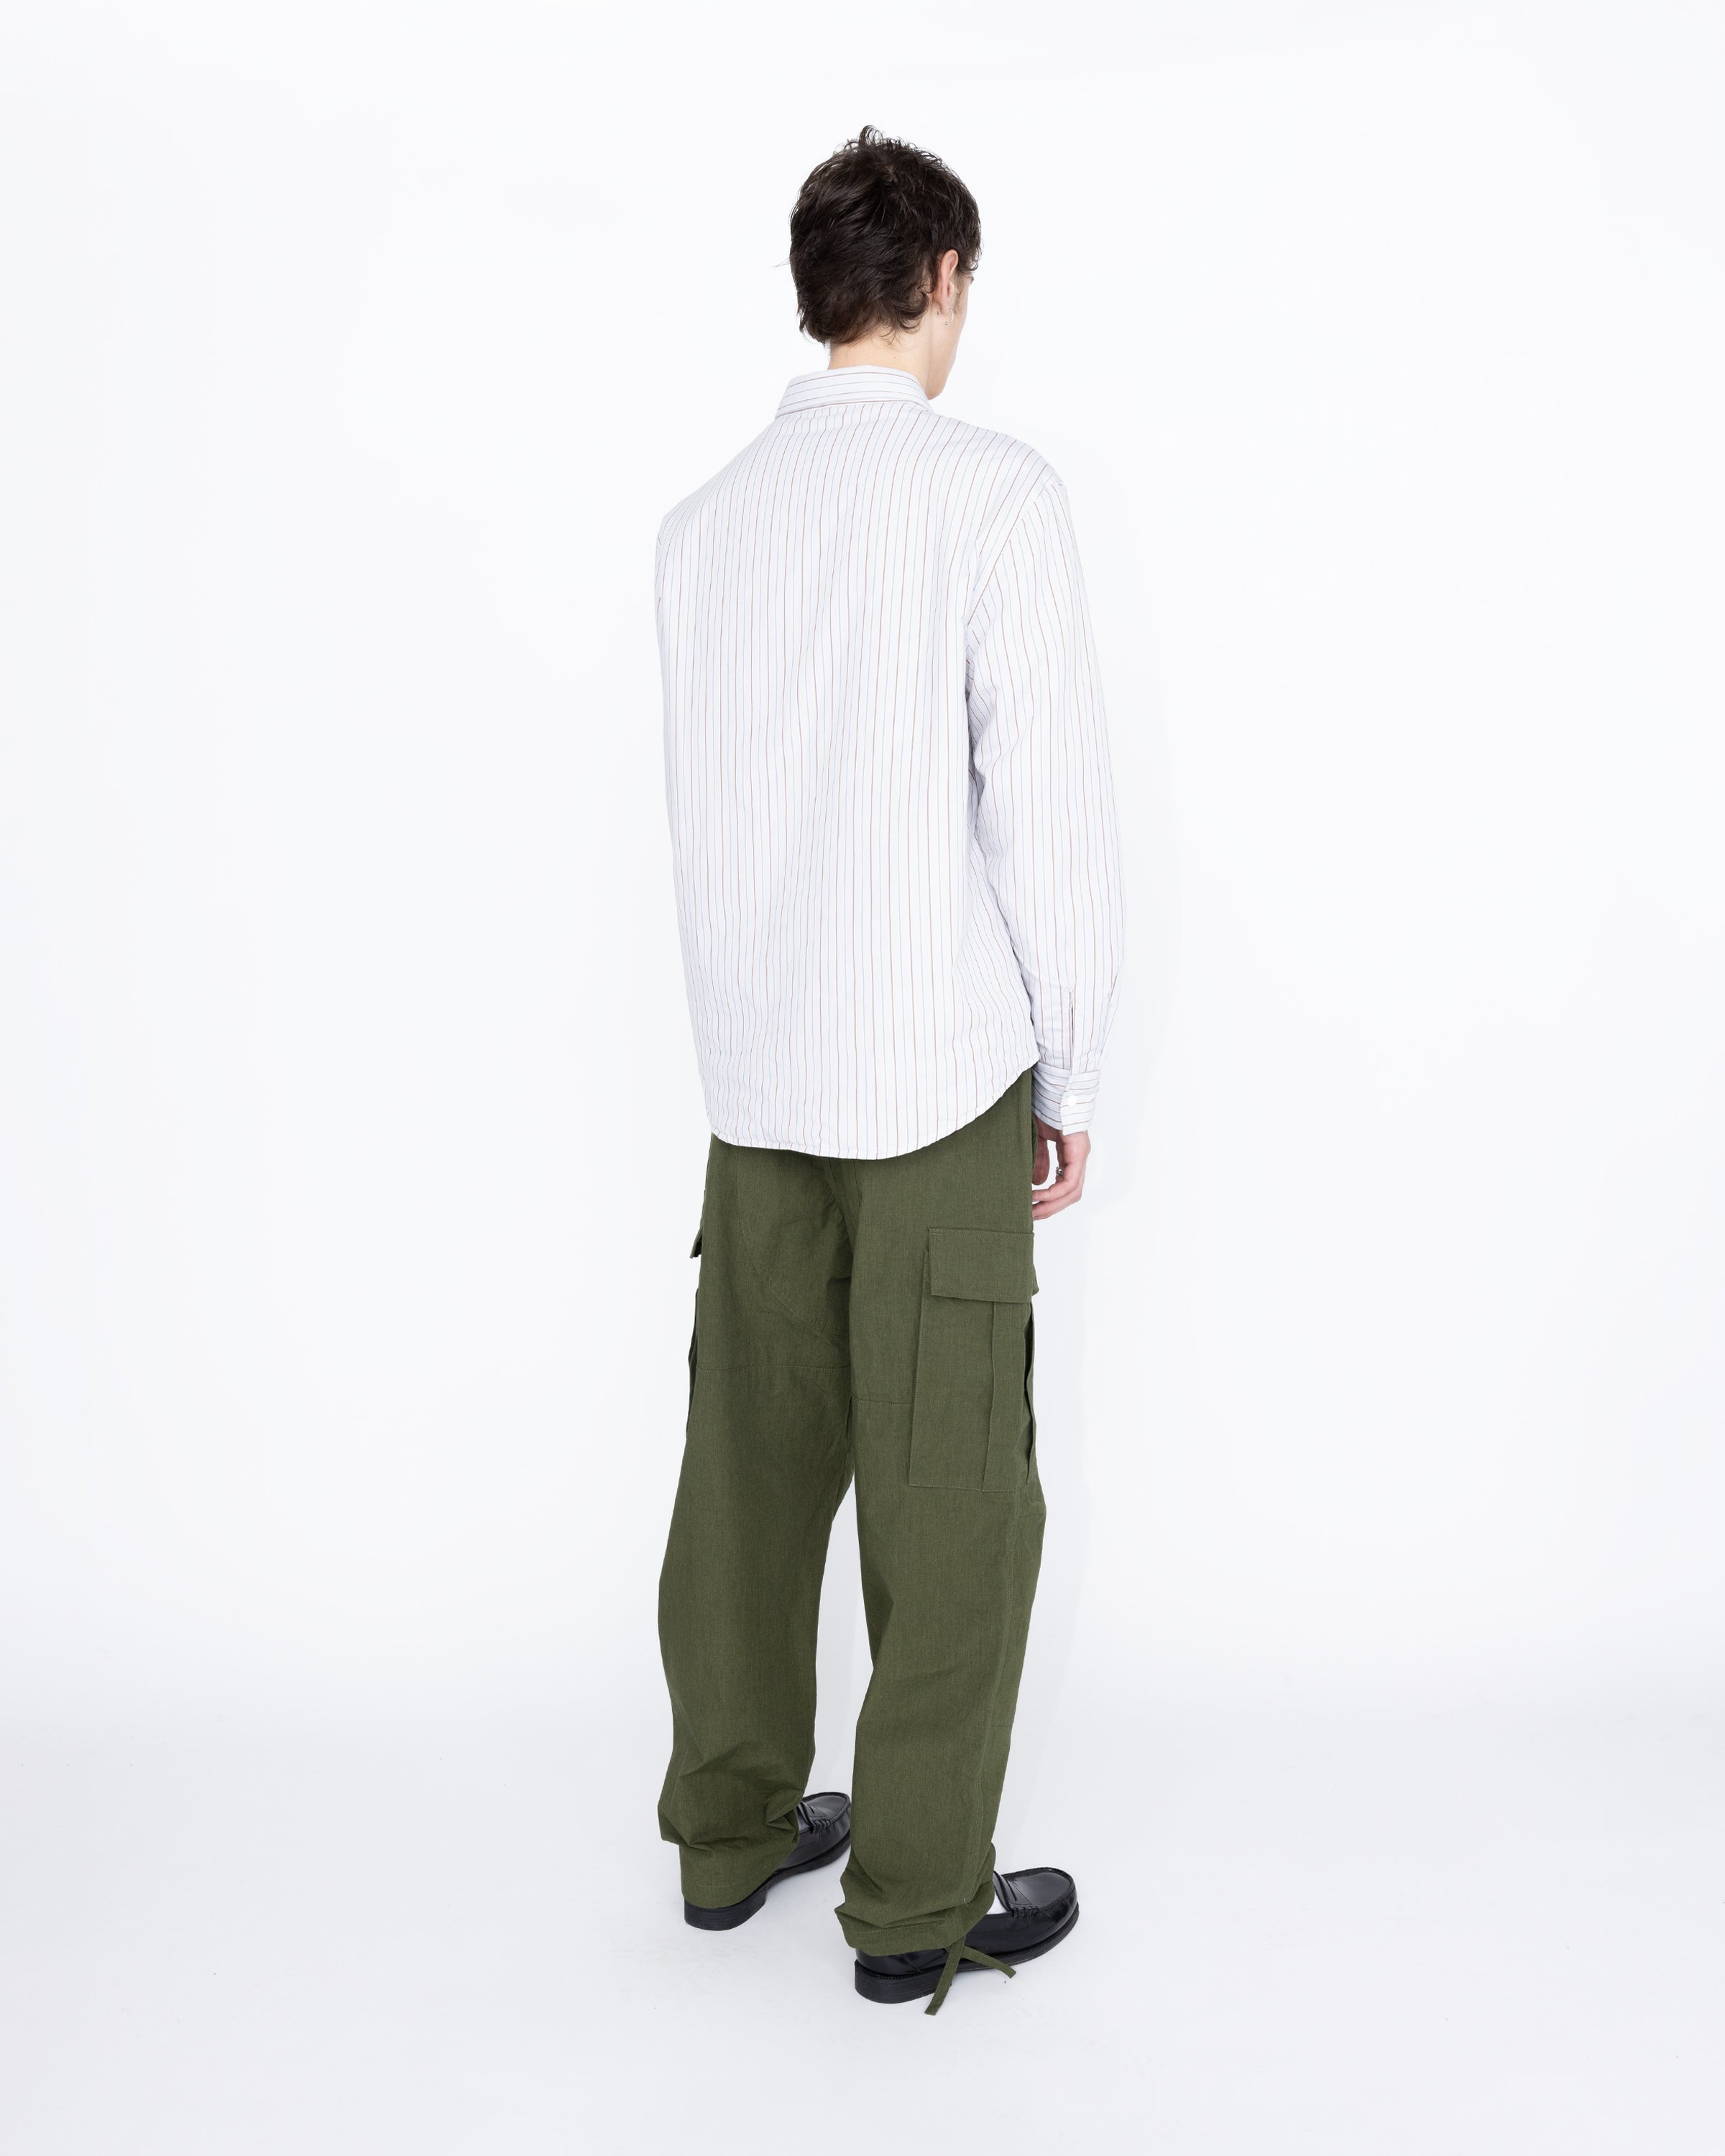 Highsnobiety HS05 - Insulated Shirt Jacket Stripes - Clothing - Beige - Image 4